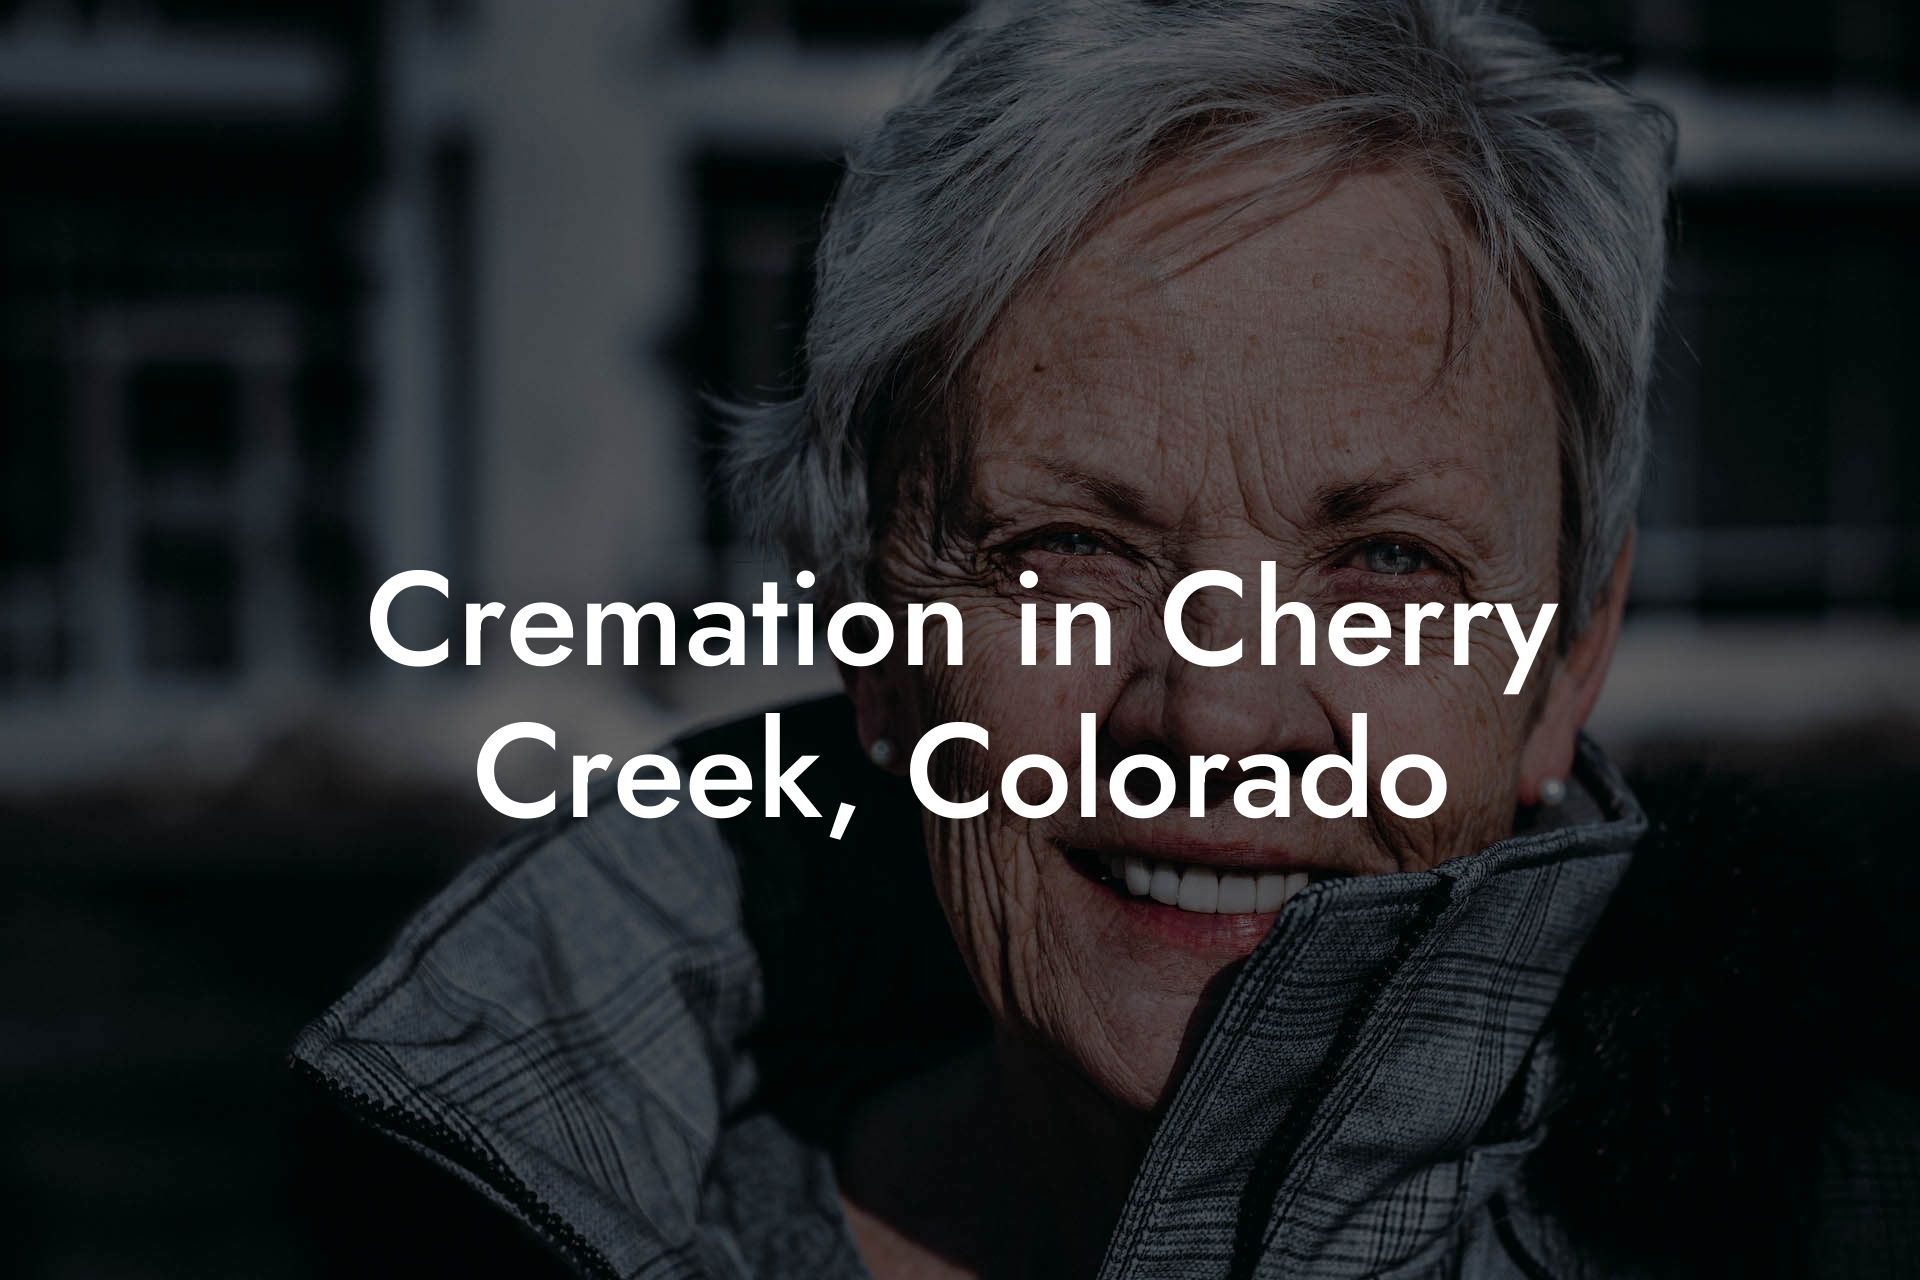 Cremation in Cherry Creek, Colorado